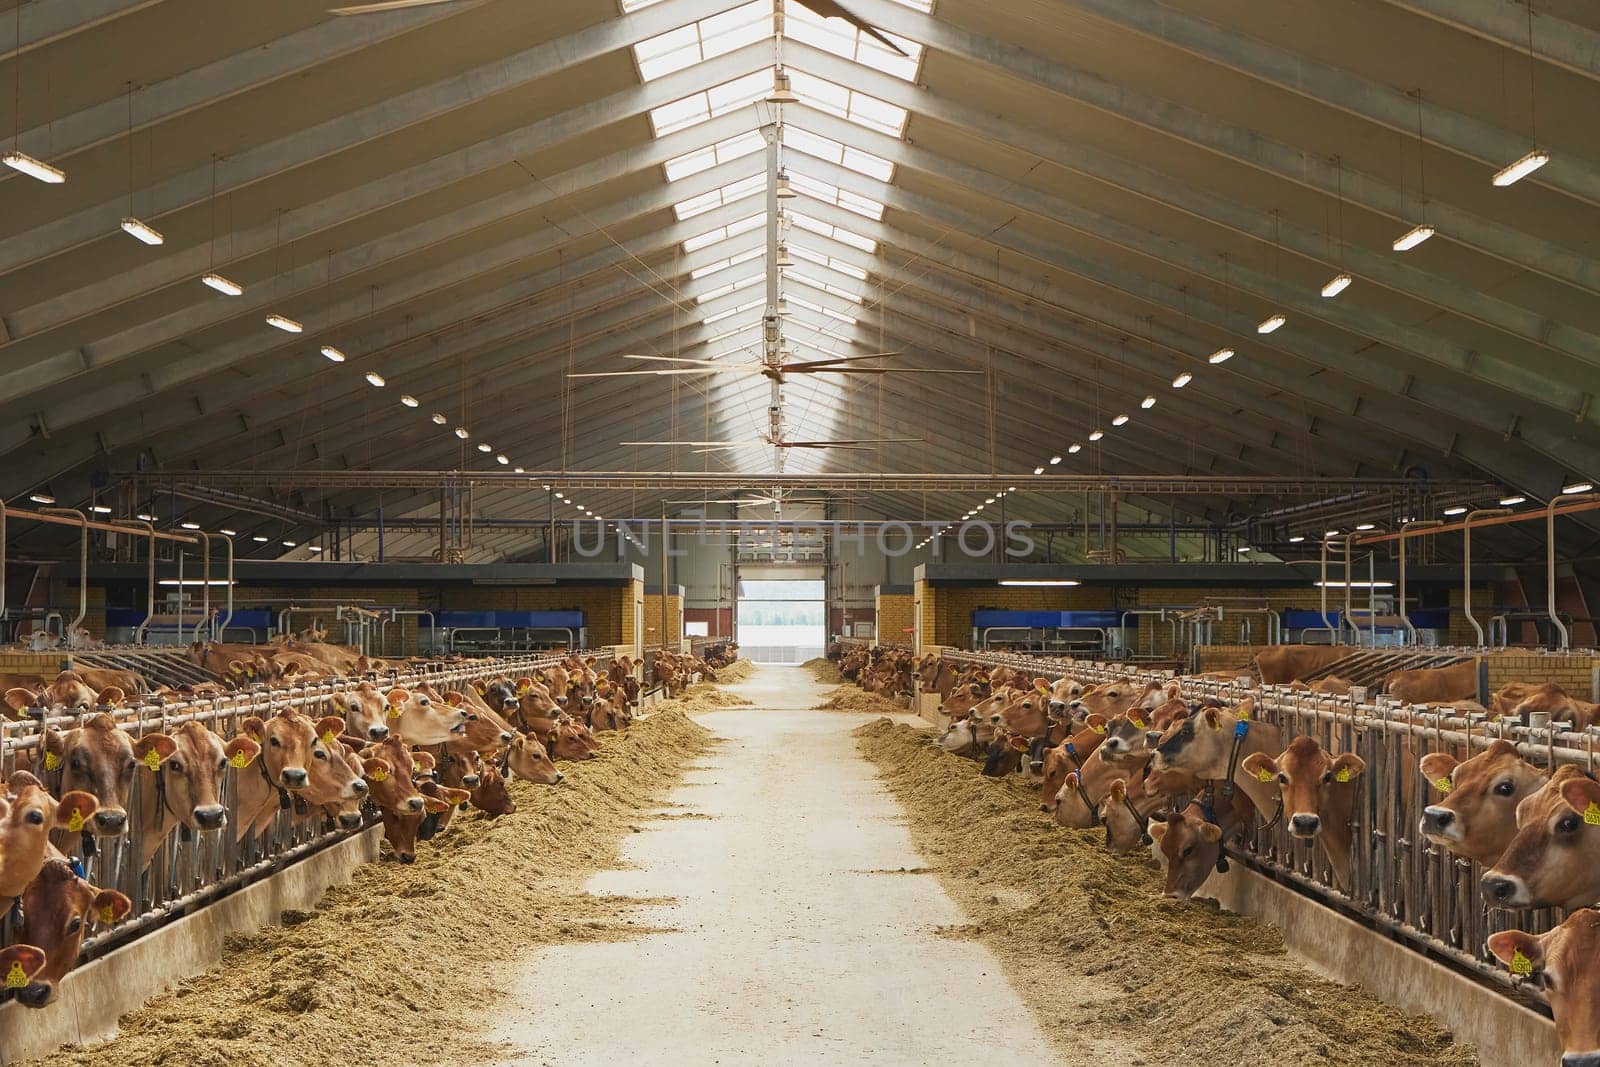 Cute Jersey cows on a farm in Denmark by Viktor_Osypenko